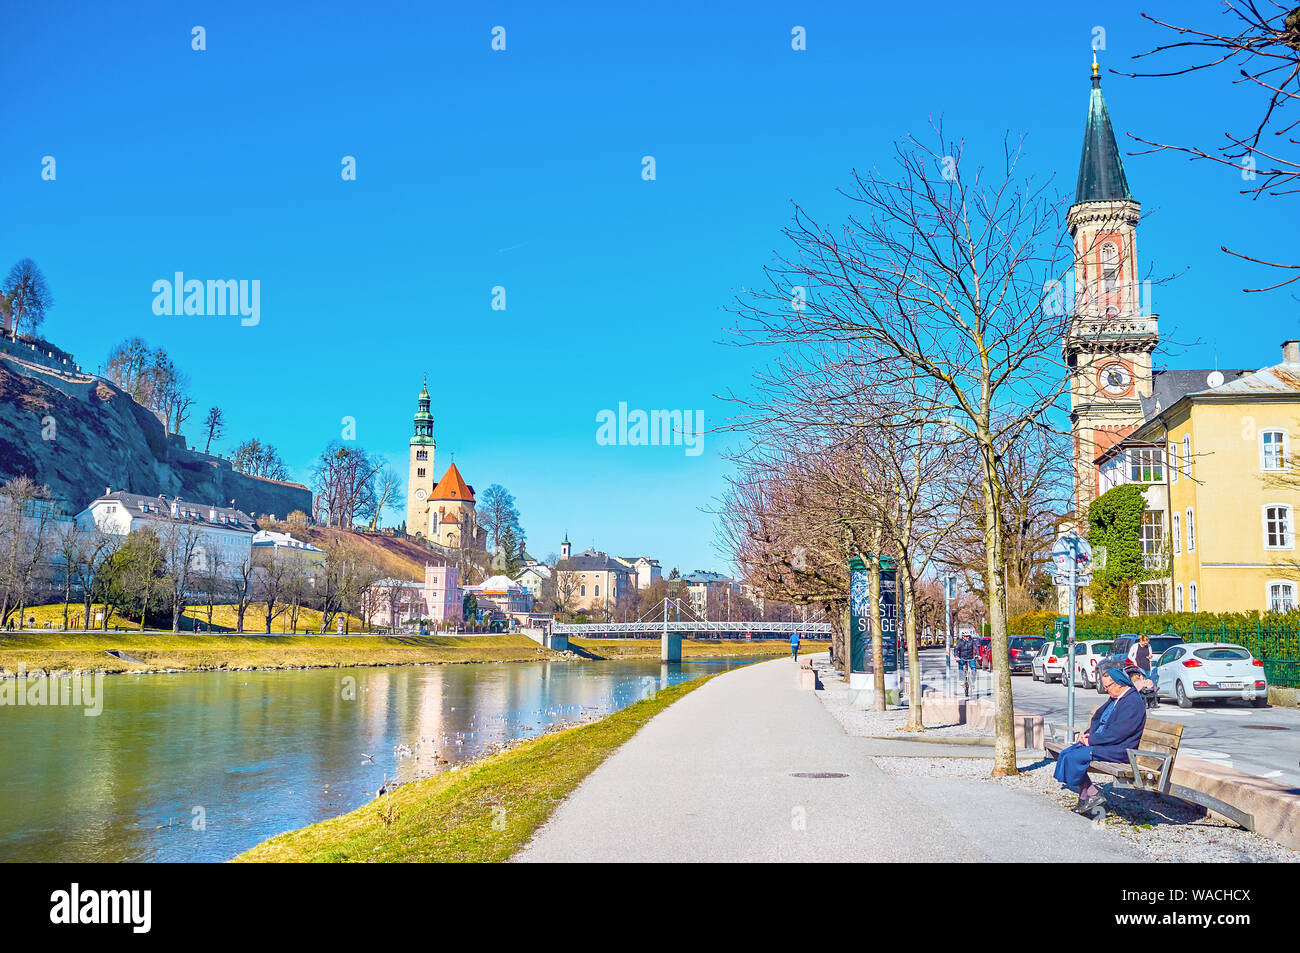 Salzbourg, Autriche - 27 février 2019 : La vue panoramique sur la rivière Salzach avec de hauts clochers des églises médiévales et piétonne agréable prom Banque D'Images